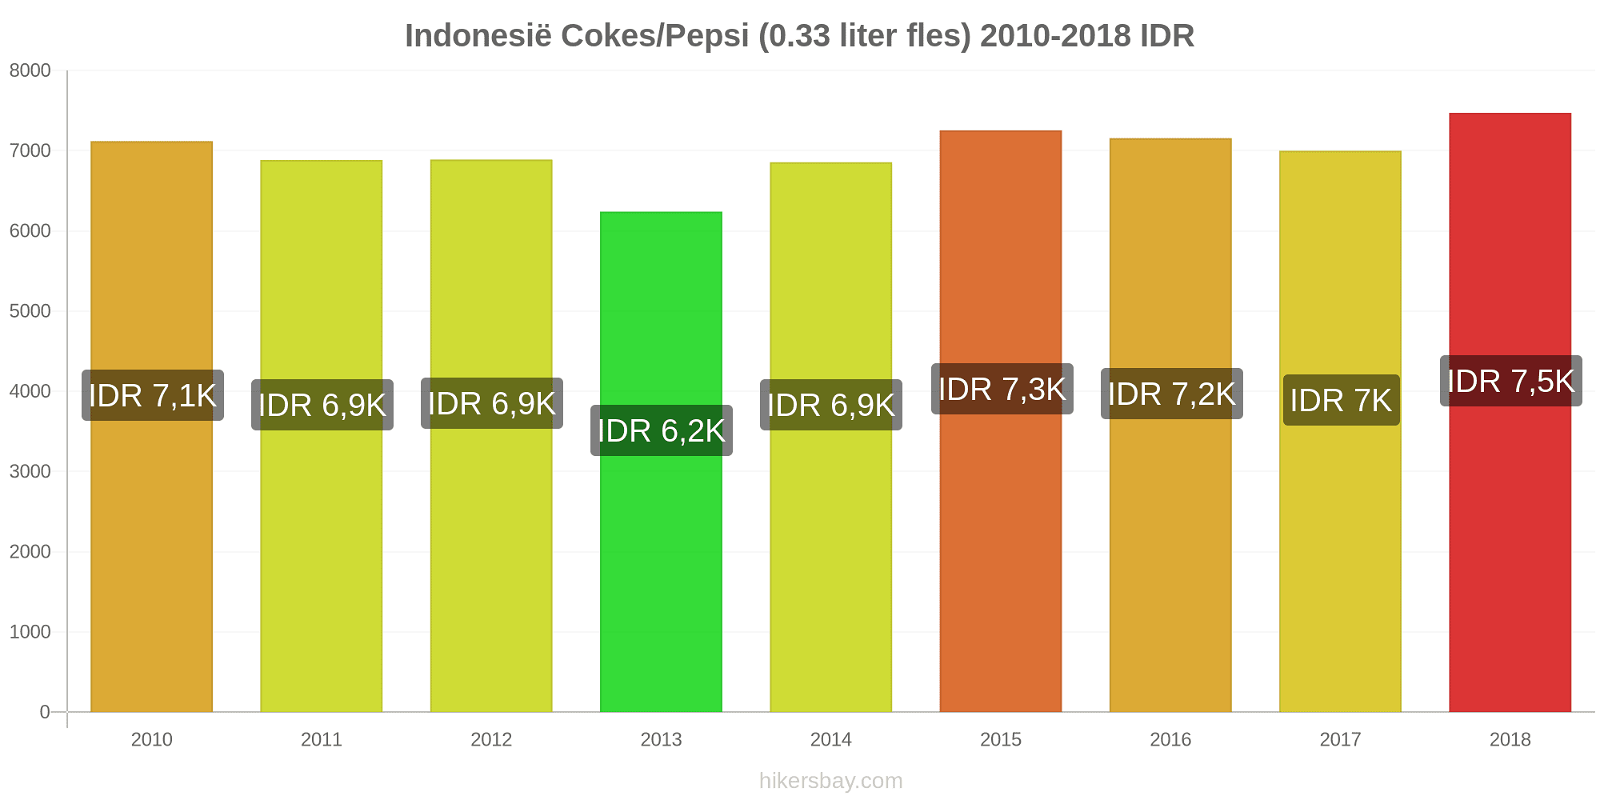 Indonesië prijswijzigingen Cokes/Pepsi (0,33 literfles) hikersbay.com